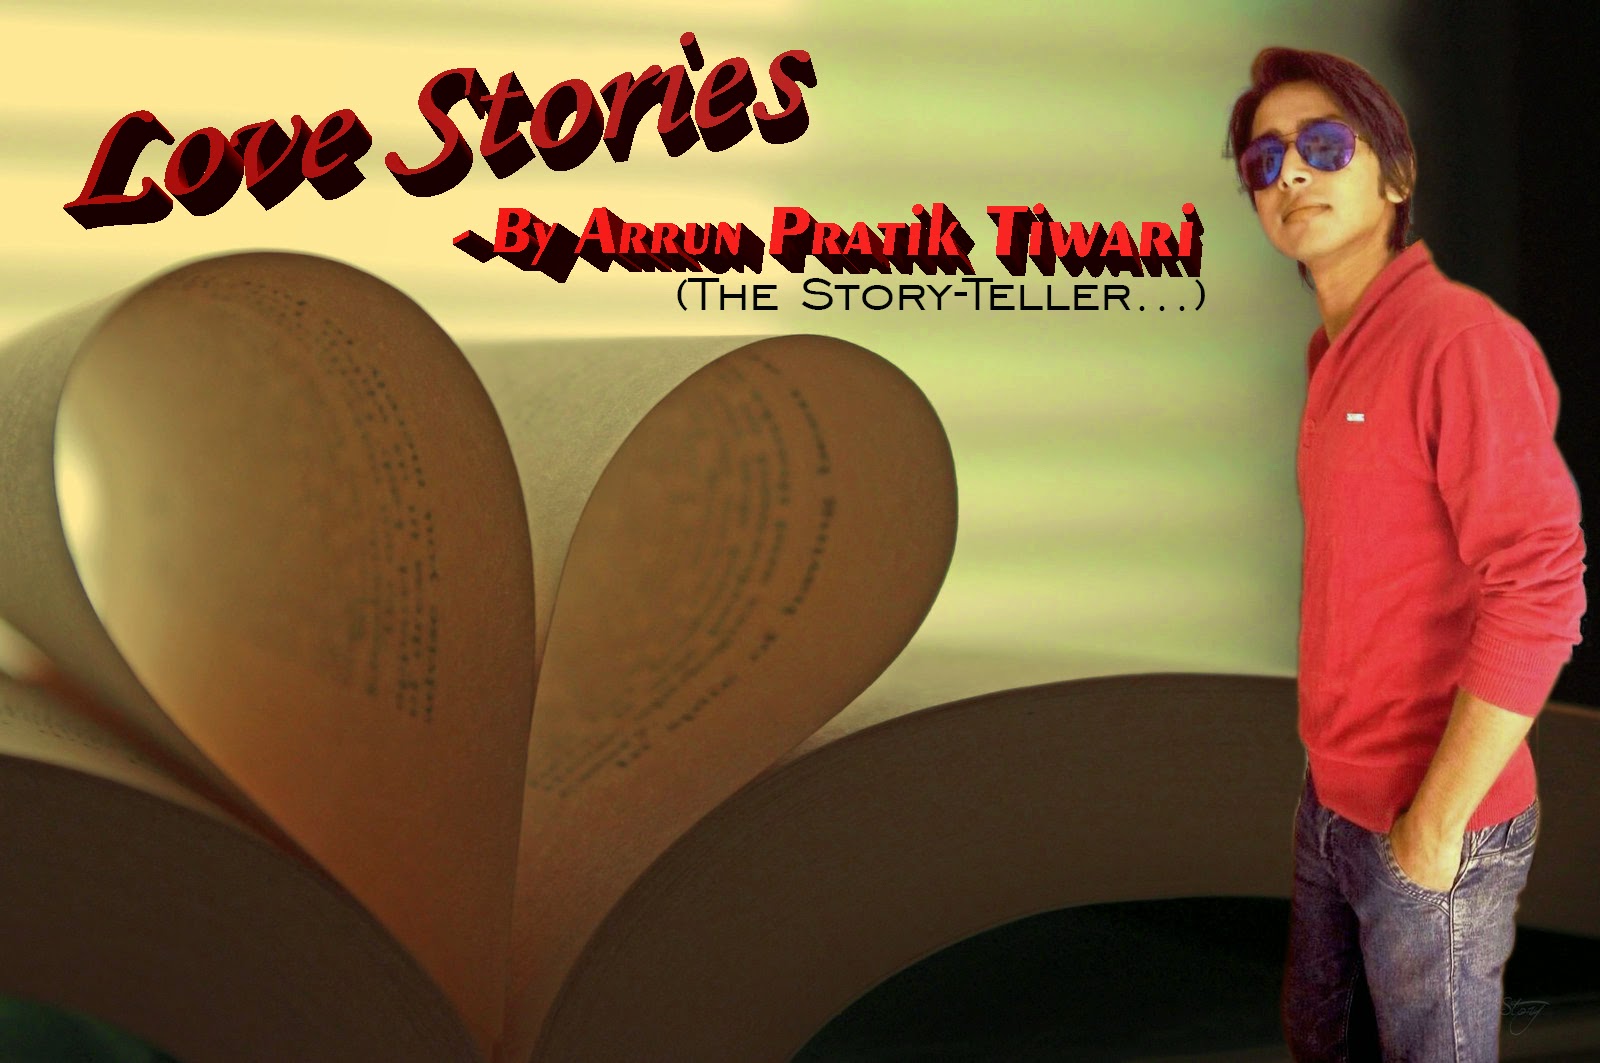 Arrun Pratik Tiwari (The Story-teller...)